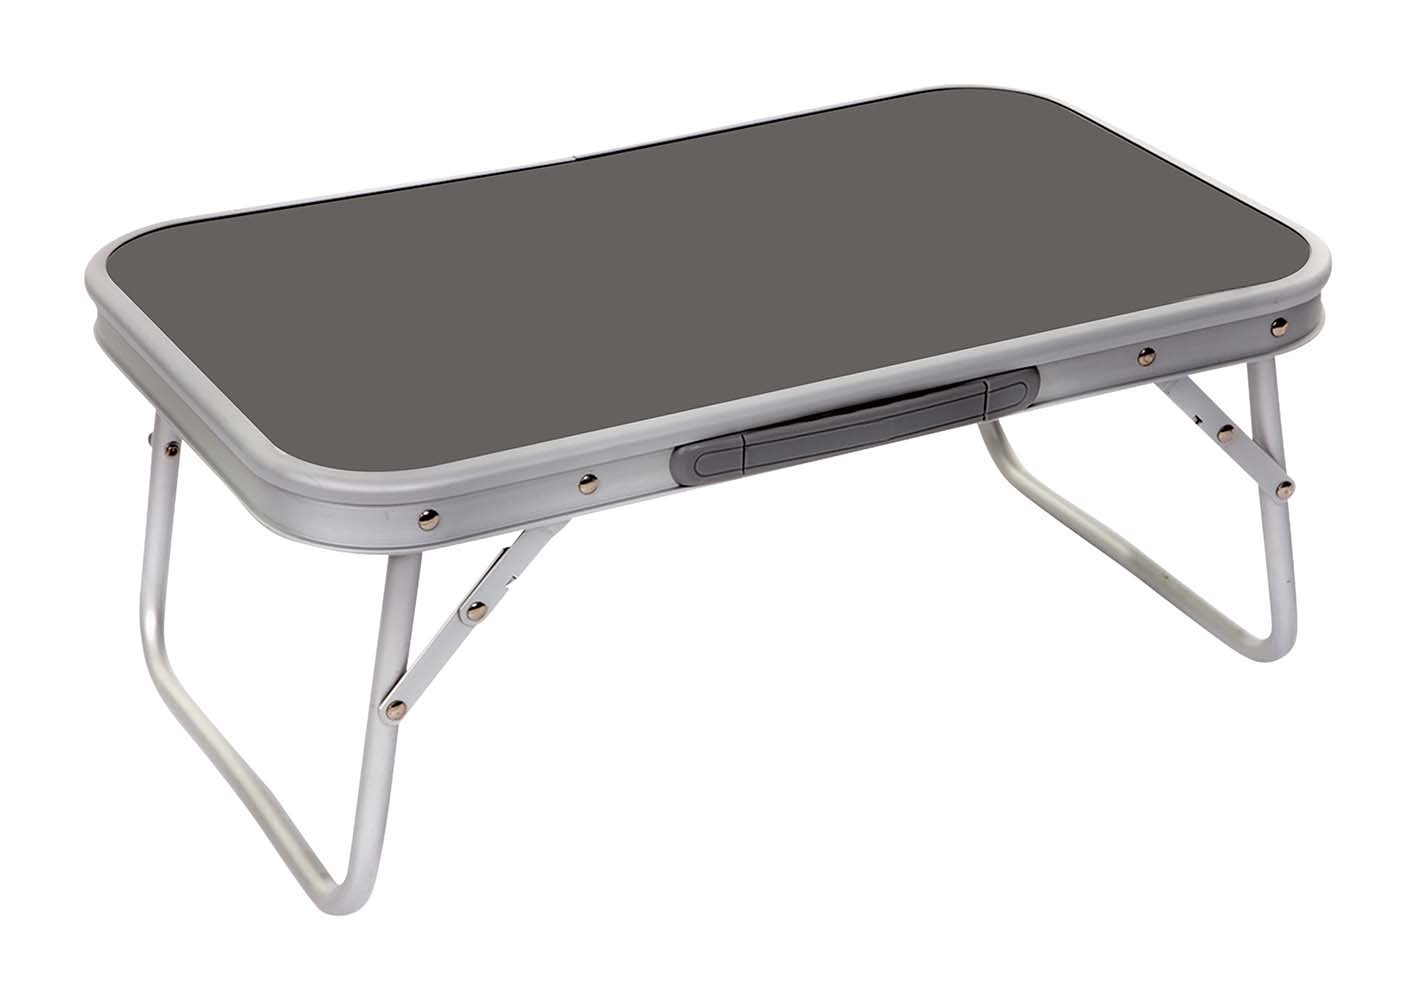 1404359 Una mesa extra baja y compacta. Esta mesa plegable es un modelo bajo con patas plegables. Fabricado en aluminio resistente y ligero. Plegado (largo x ancho x alto): 56x34x3,5 centímetros.